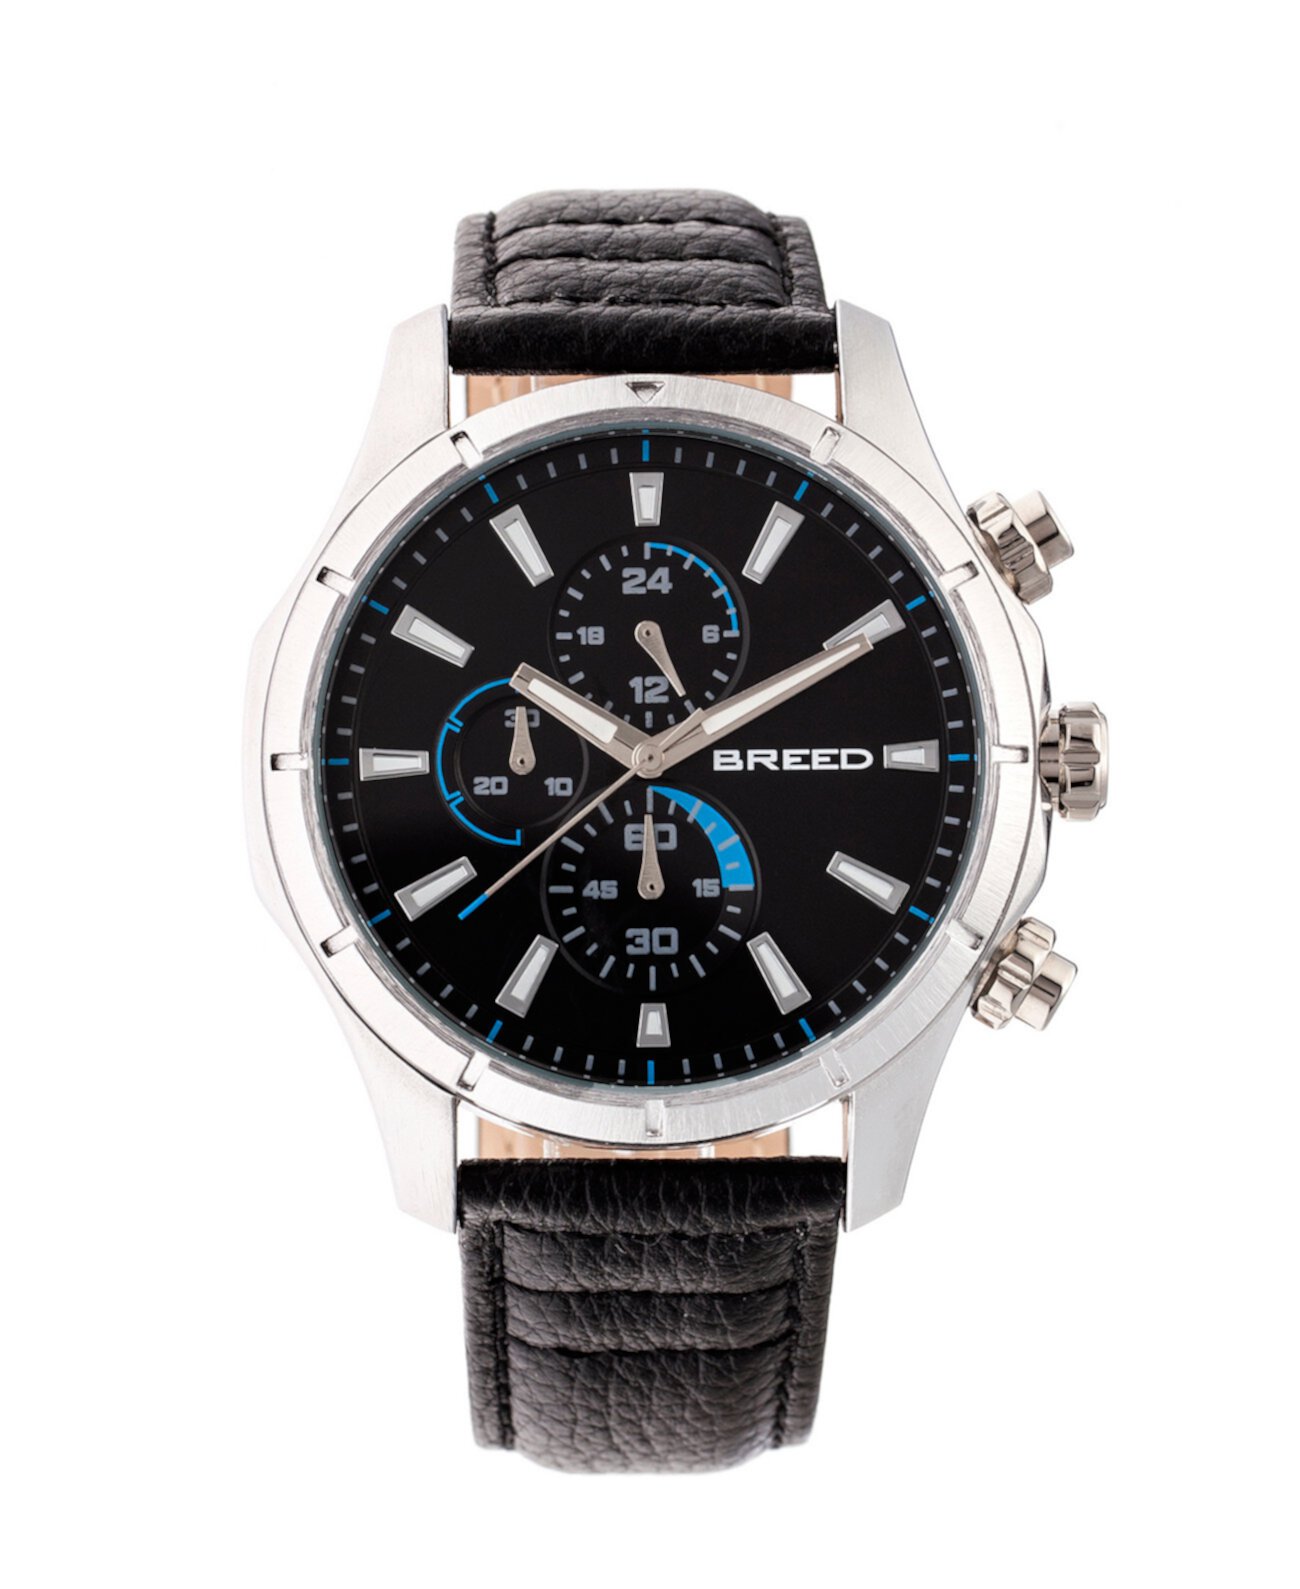 Кварцевые часы Lacroix с серебристым и черным часами из натуральной кожи 47 мм Breed